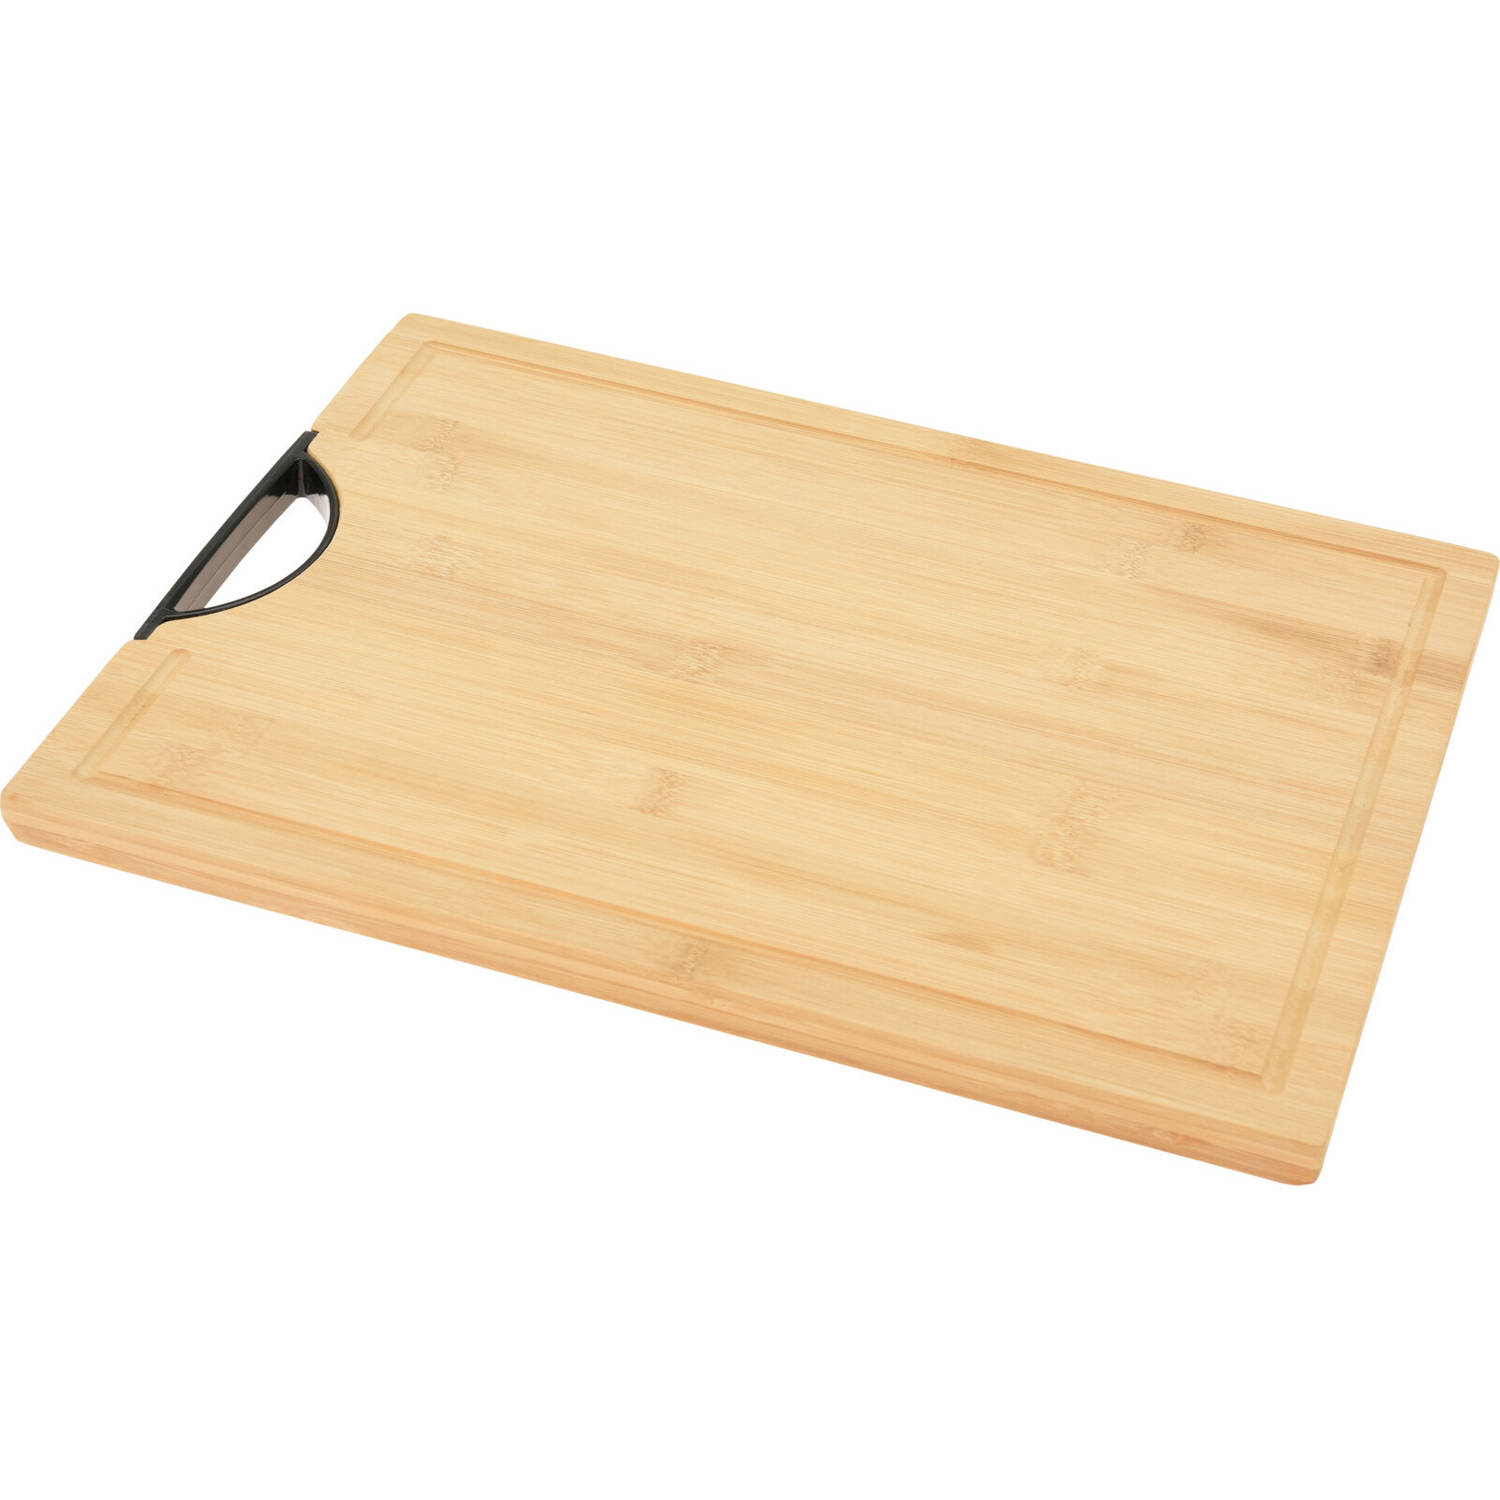 Bamboe houten snijplank / serveerplank met handvat 40 x 30 x cm - Snijplanken | Blokker